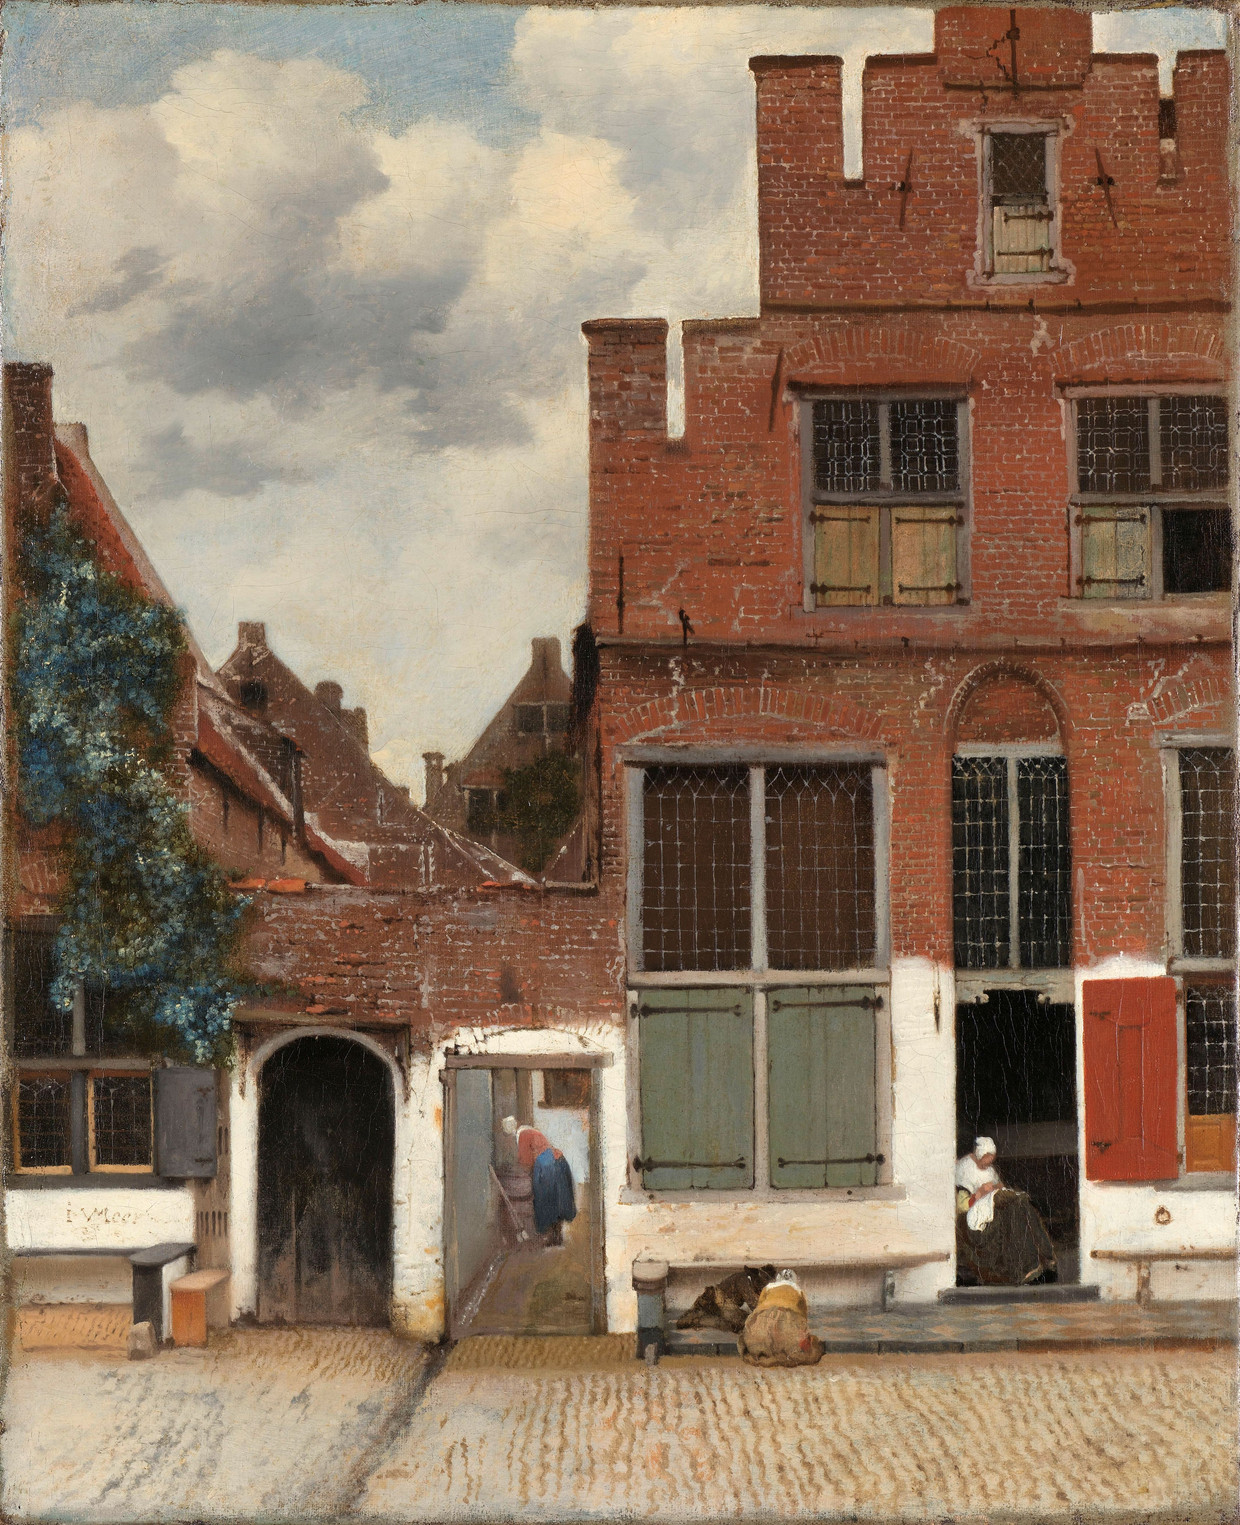 Gezicht op huizen in Delft, bekend als ‘Het straatje’ (1658-1659), van Johannes Vermeer.